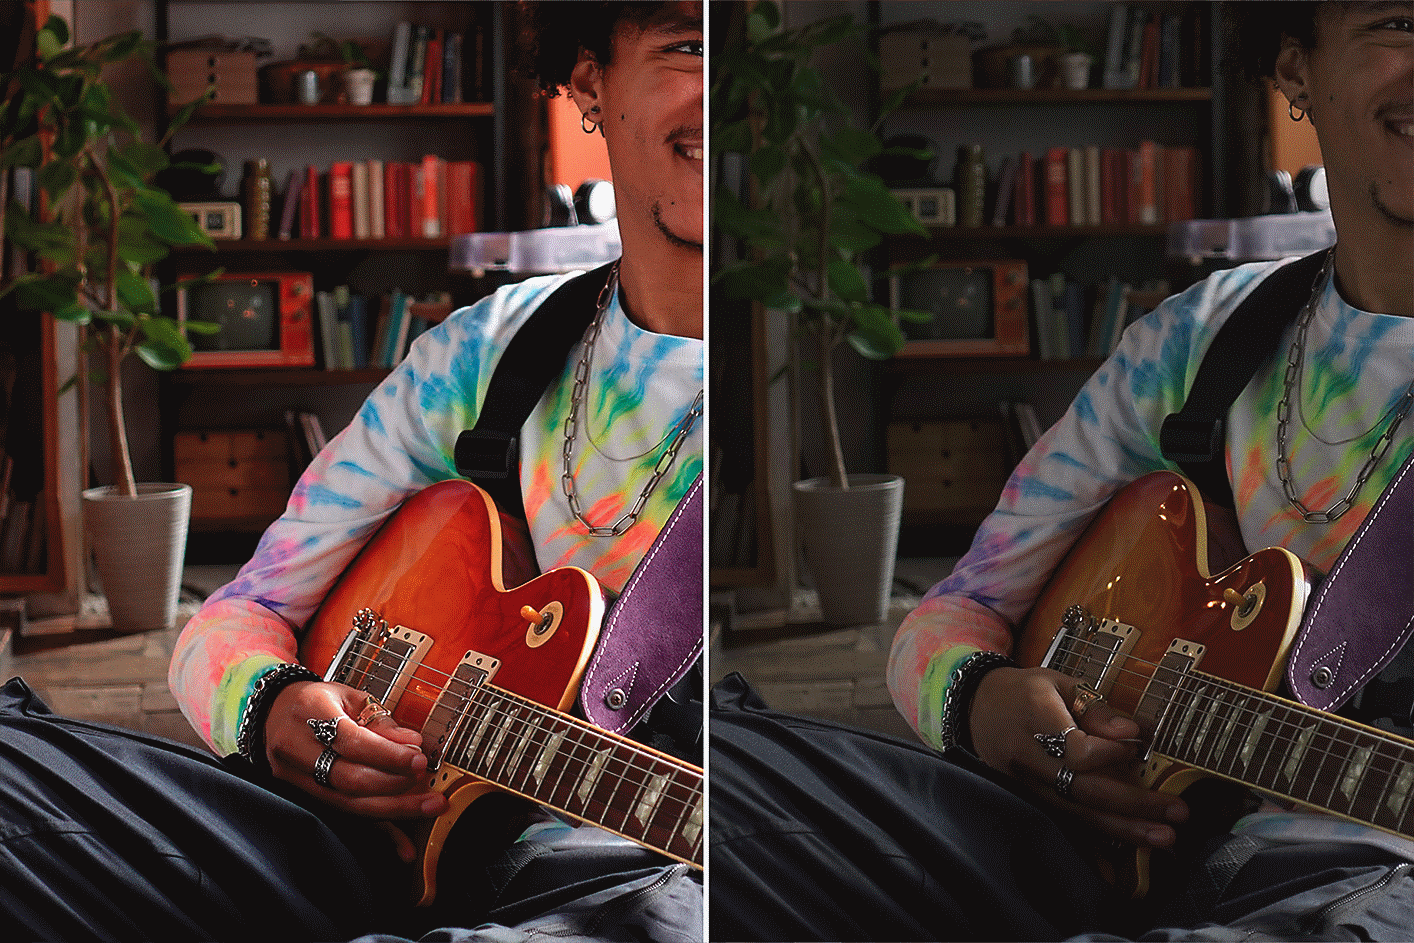 Imagen de un hombre con una guitarra Comparación de los efectos izquierdo y derecho